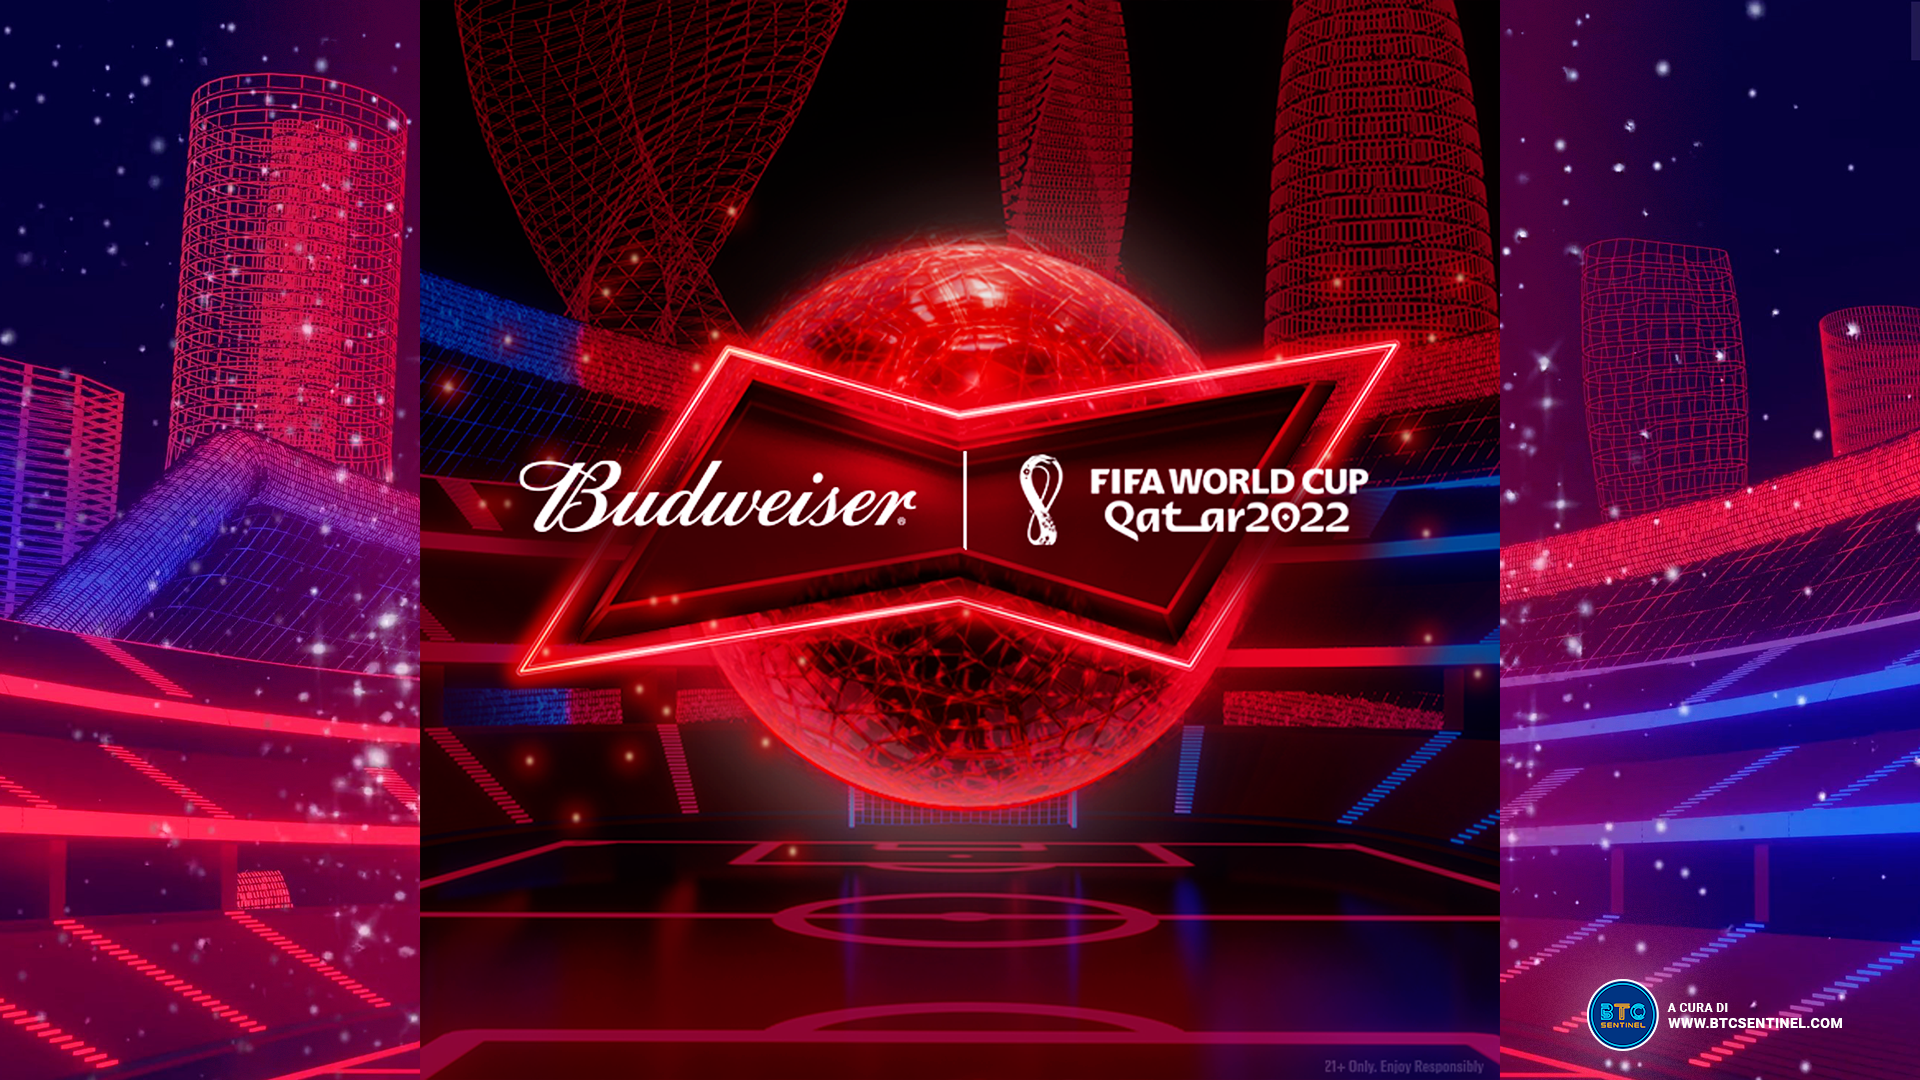 Budweiser, NFT per la Fifa World Cup 2022: i tabelloni segnapunti della tua squadra